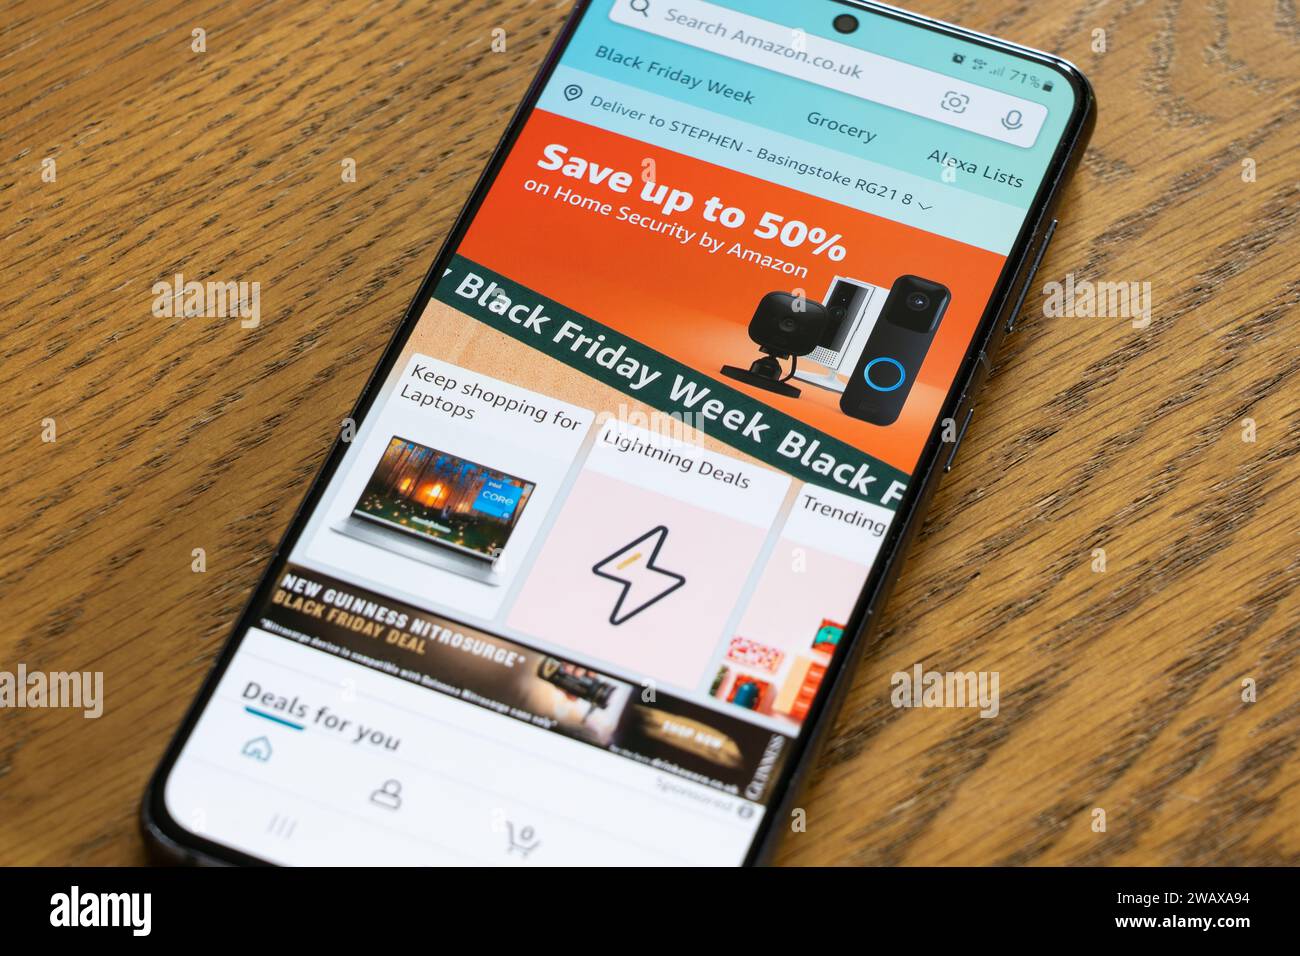 Black Friday week avec une bannière publicitaire et une page de l'application Amazon shopping sur un écran de smartphone, Royaume-Uni Banque D'Images